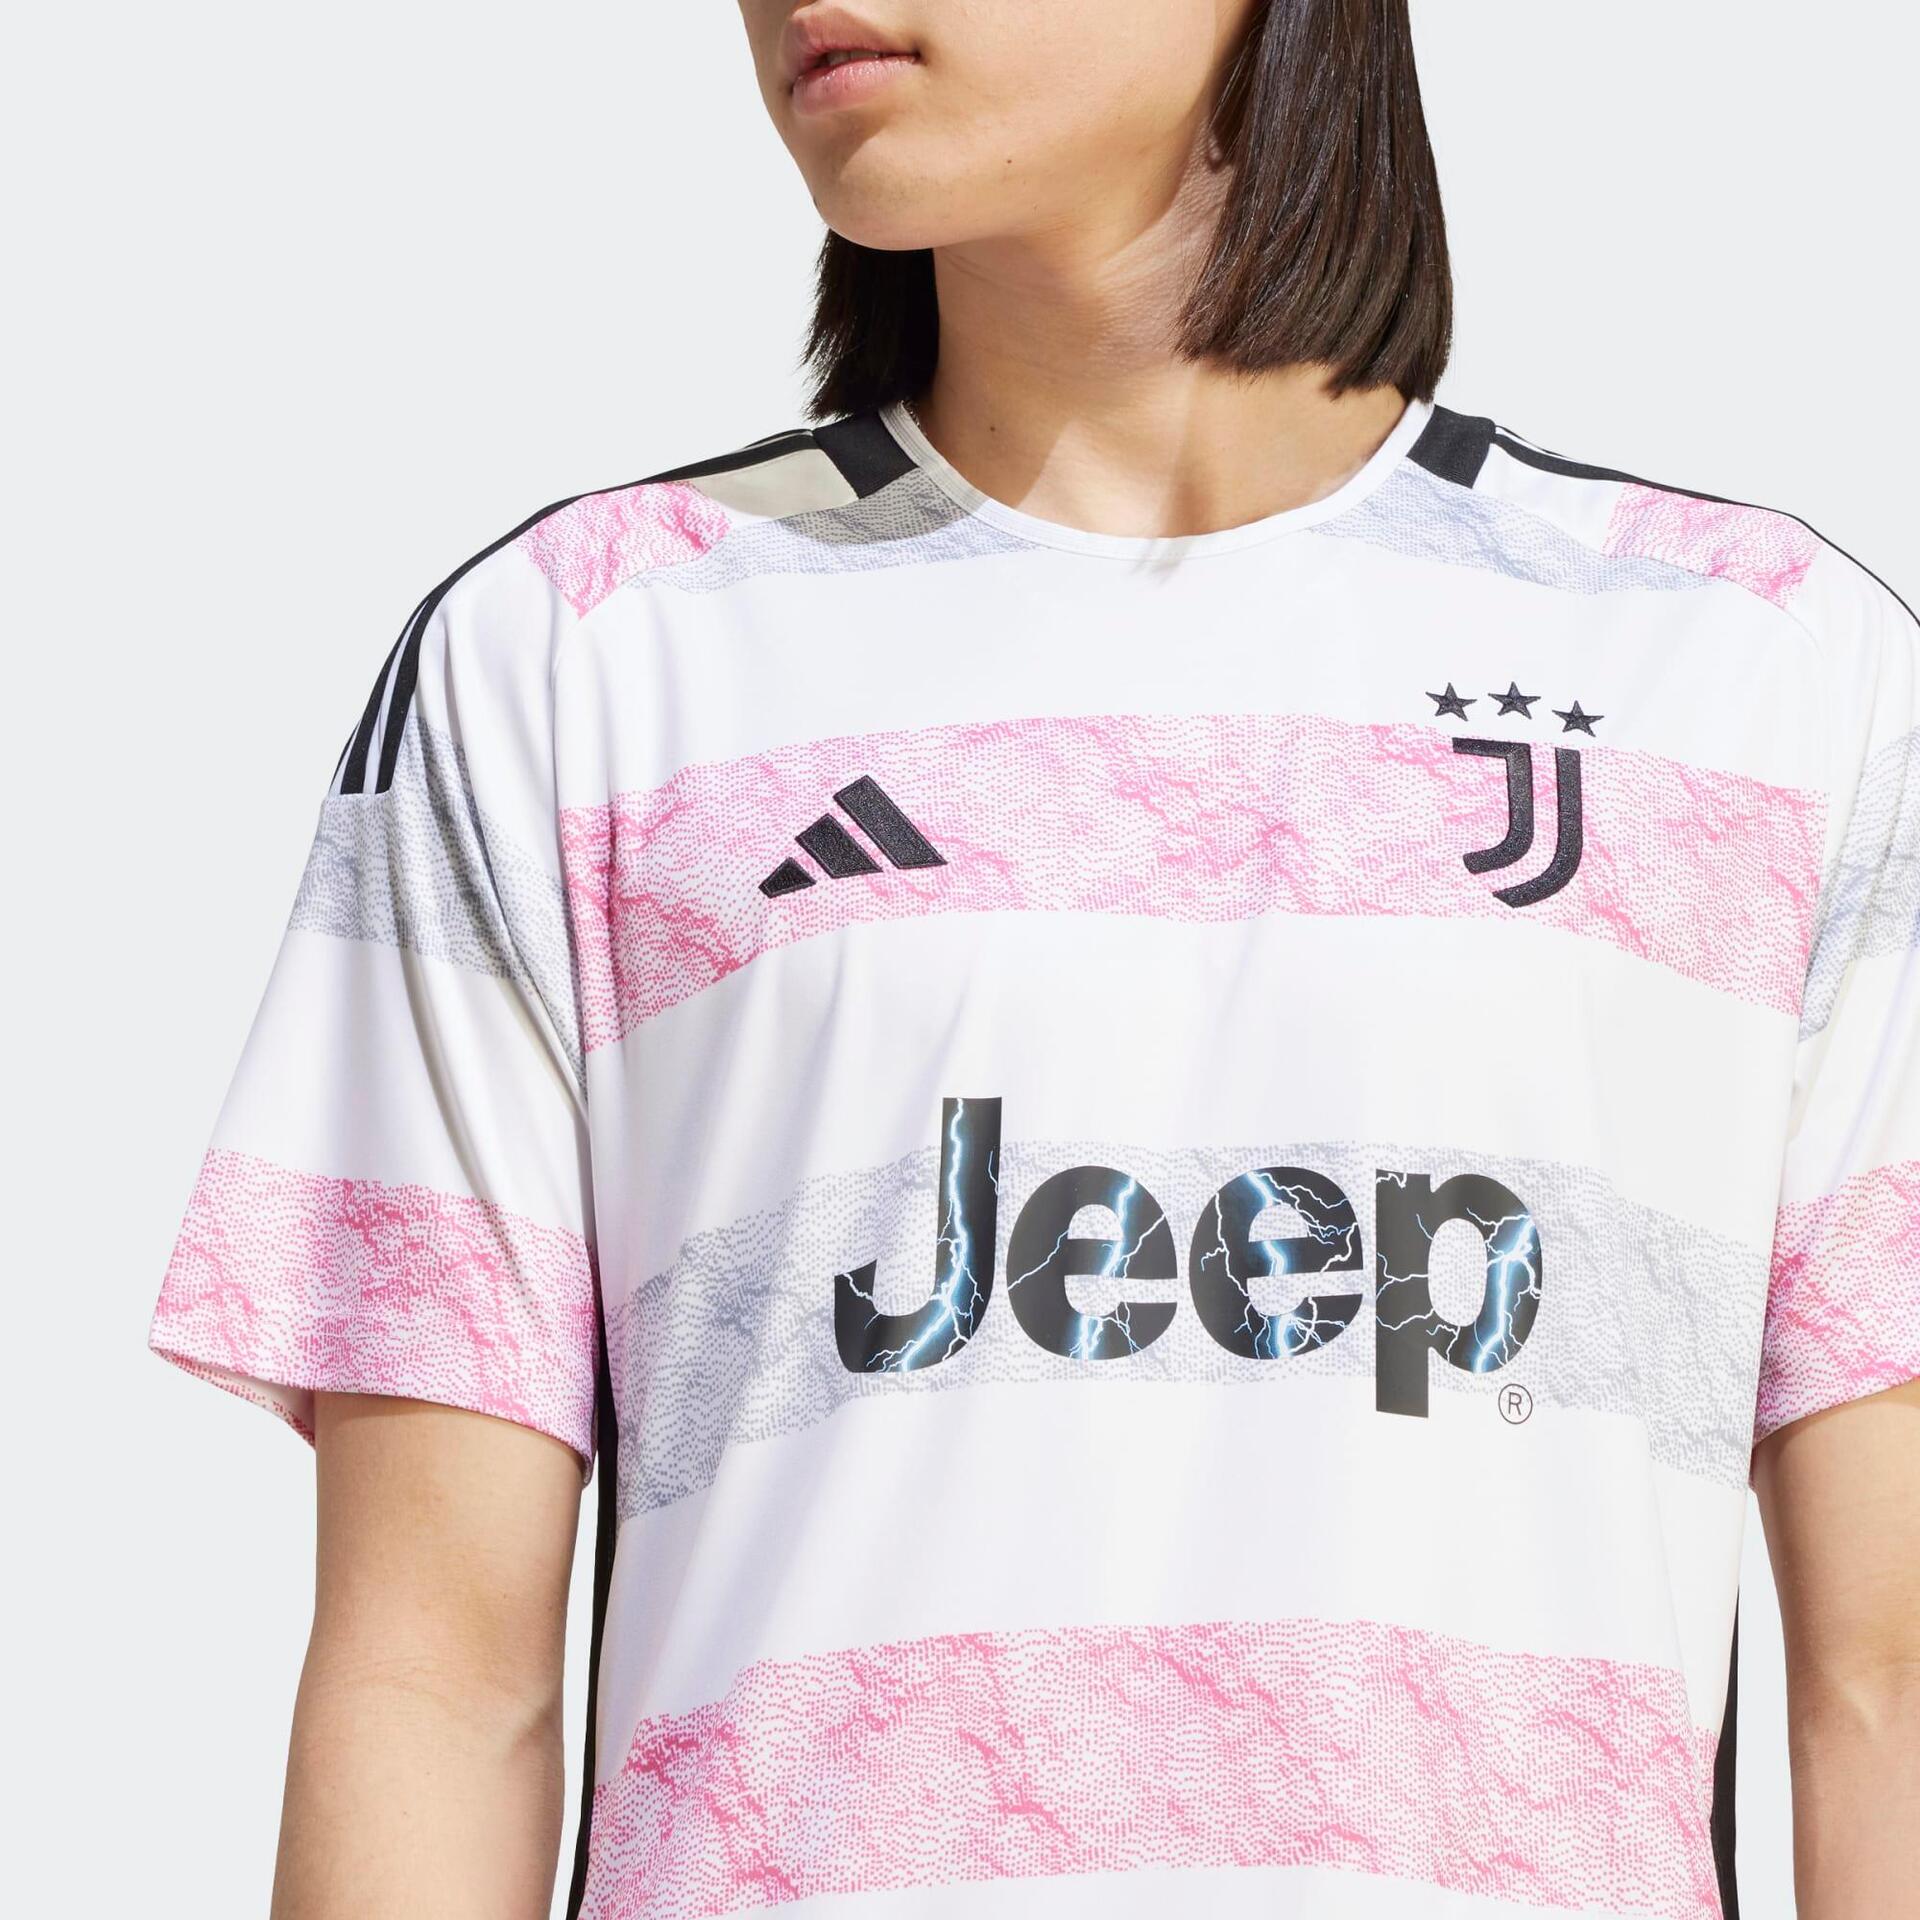 Adidas Juventus voetbalshirts voor spelers en fans